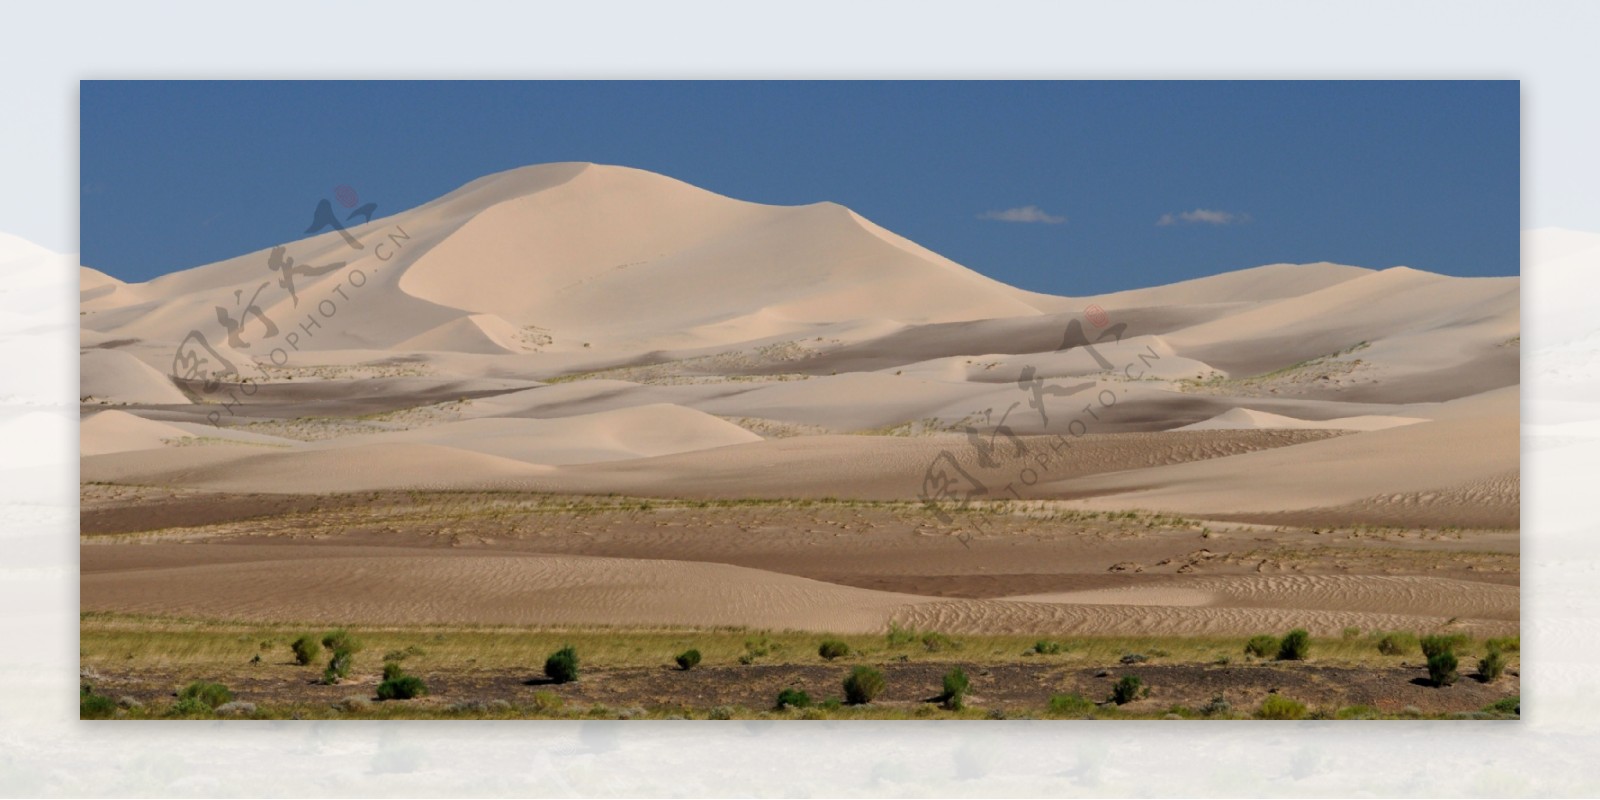 蒙古戈壁沙漠图片